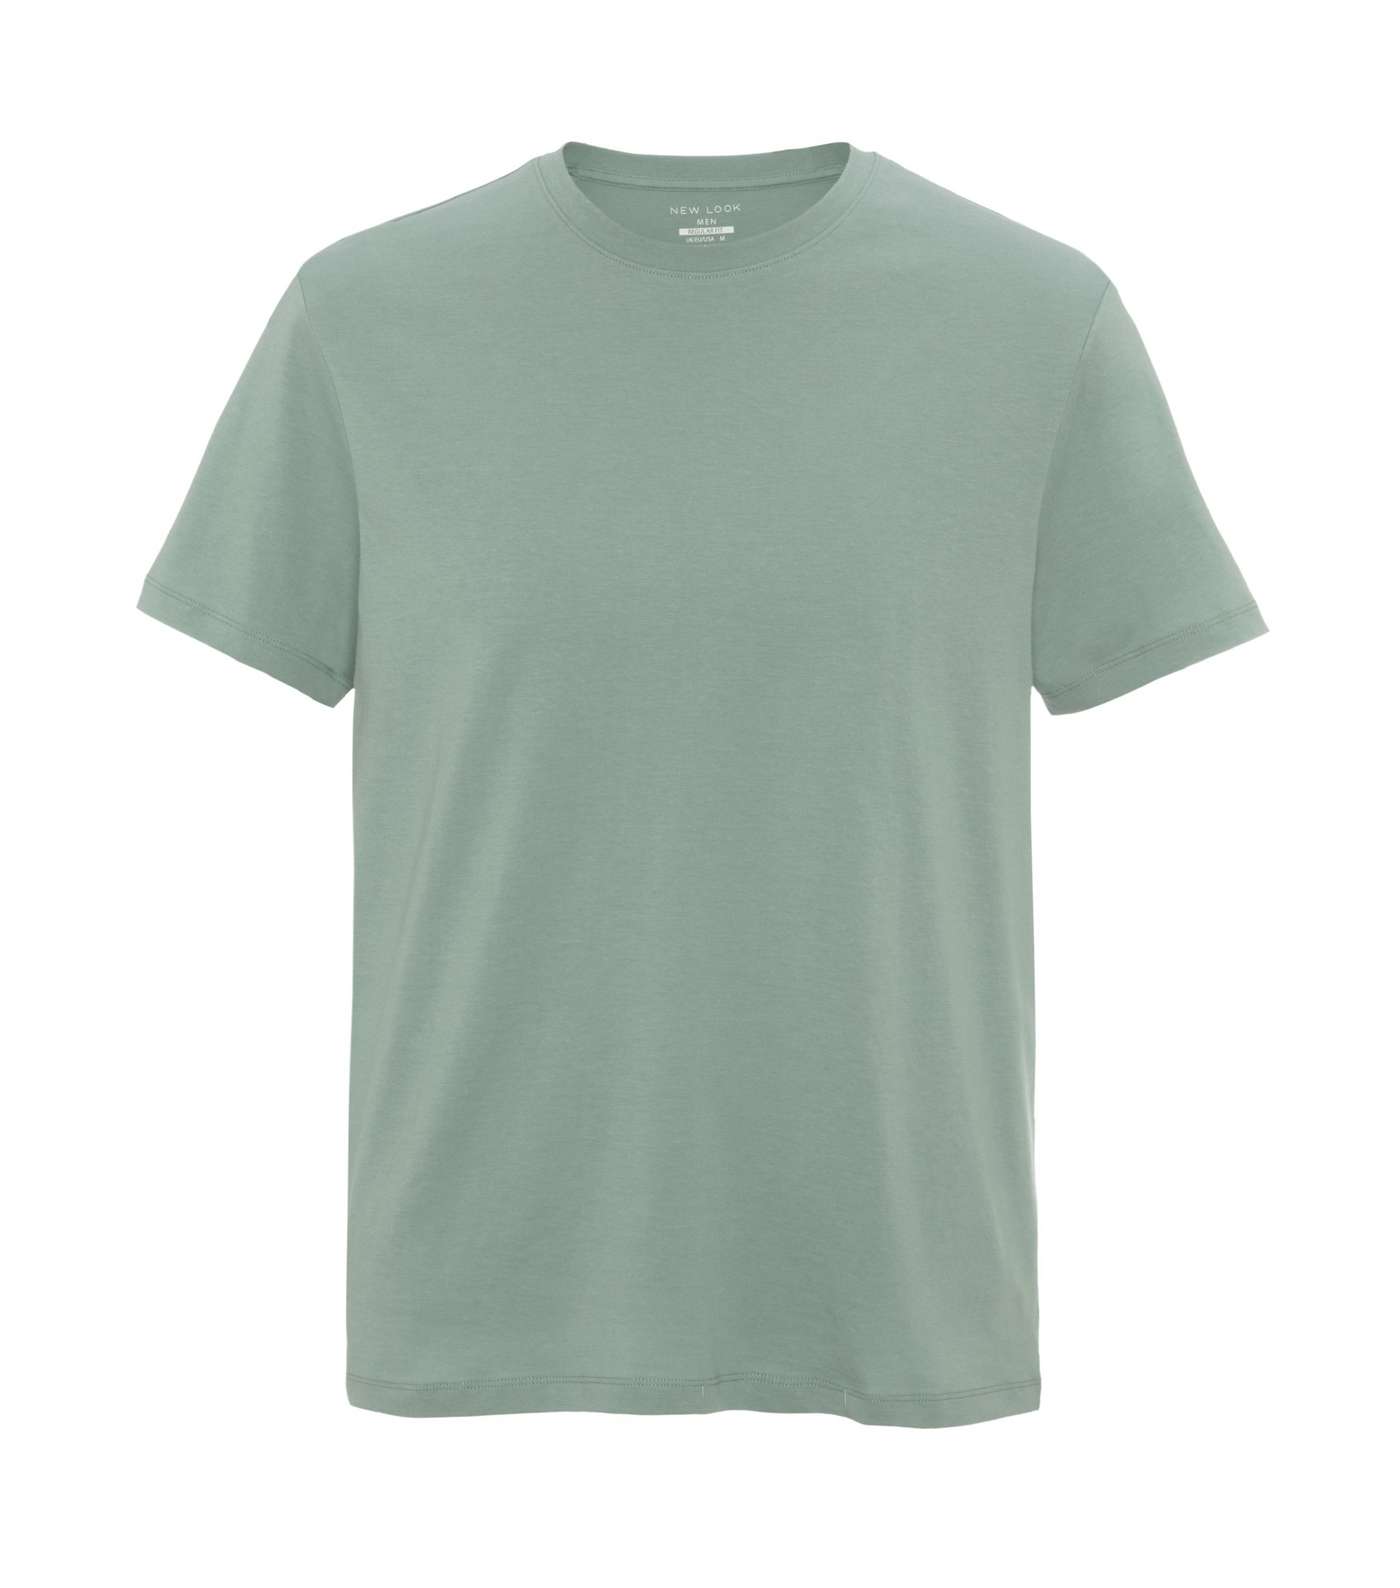 Mint Green Plain Short Sleeve T-Shirt